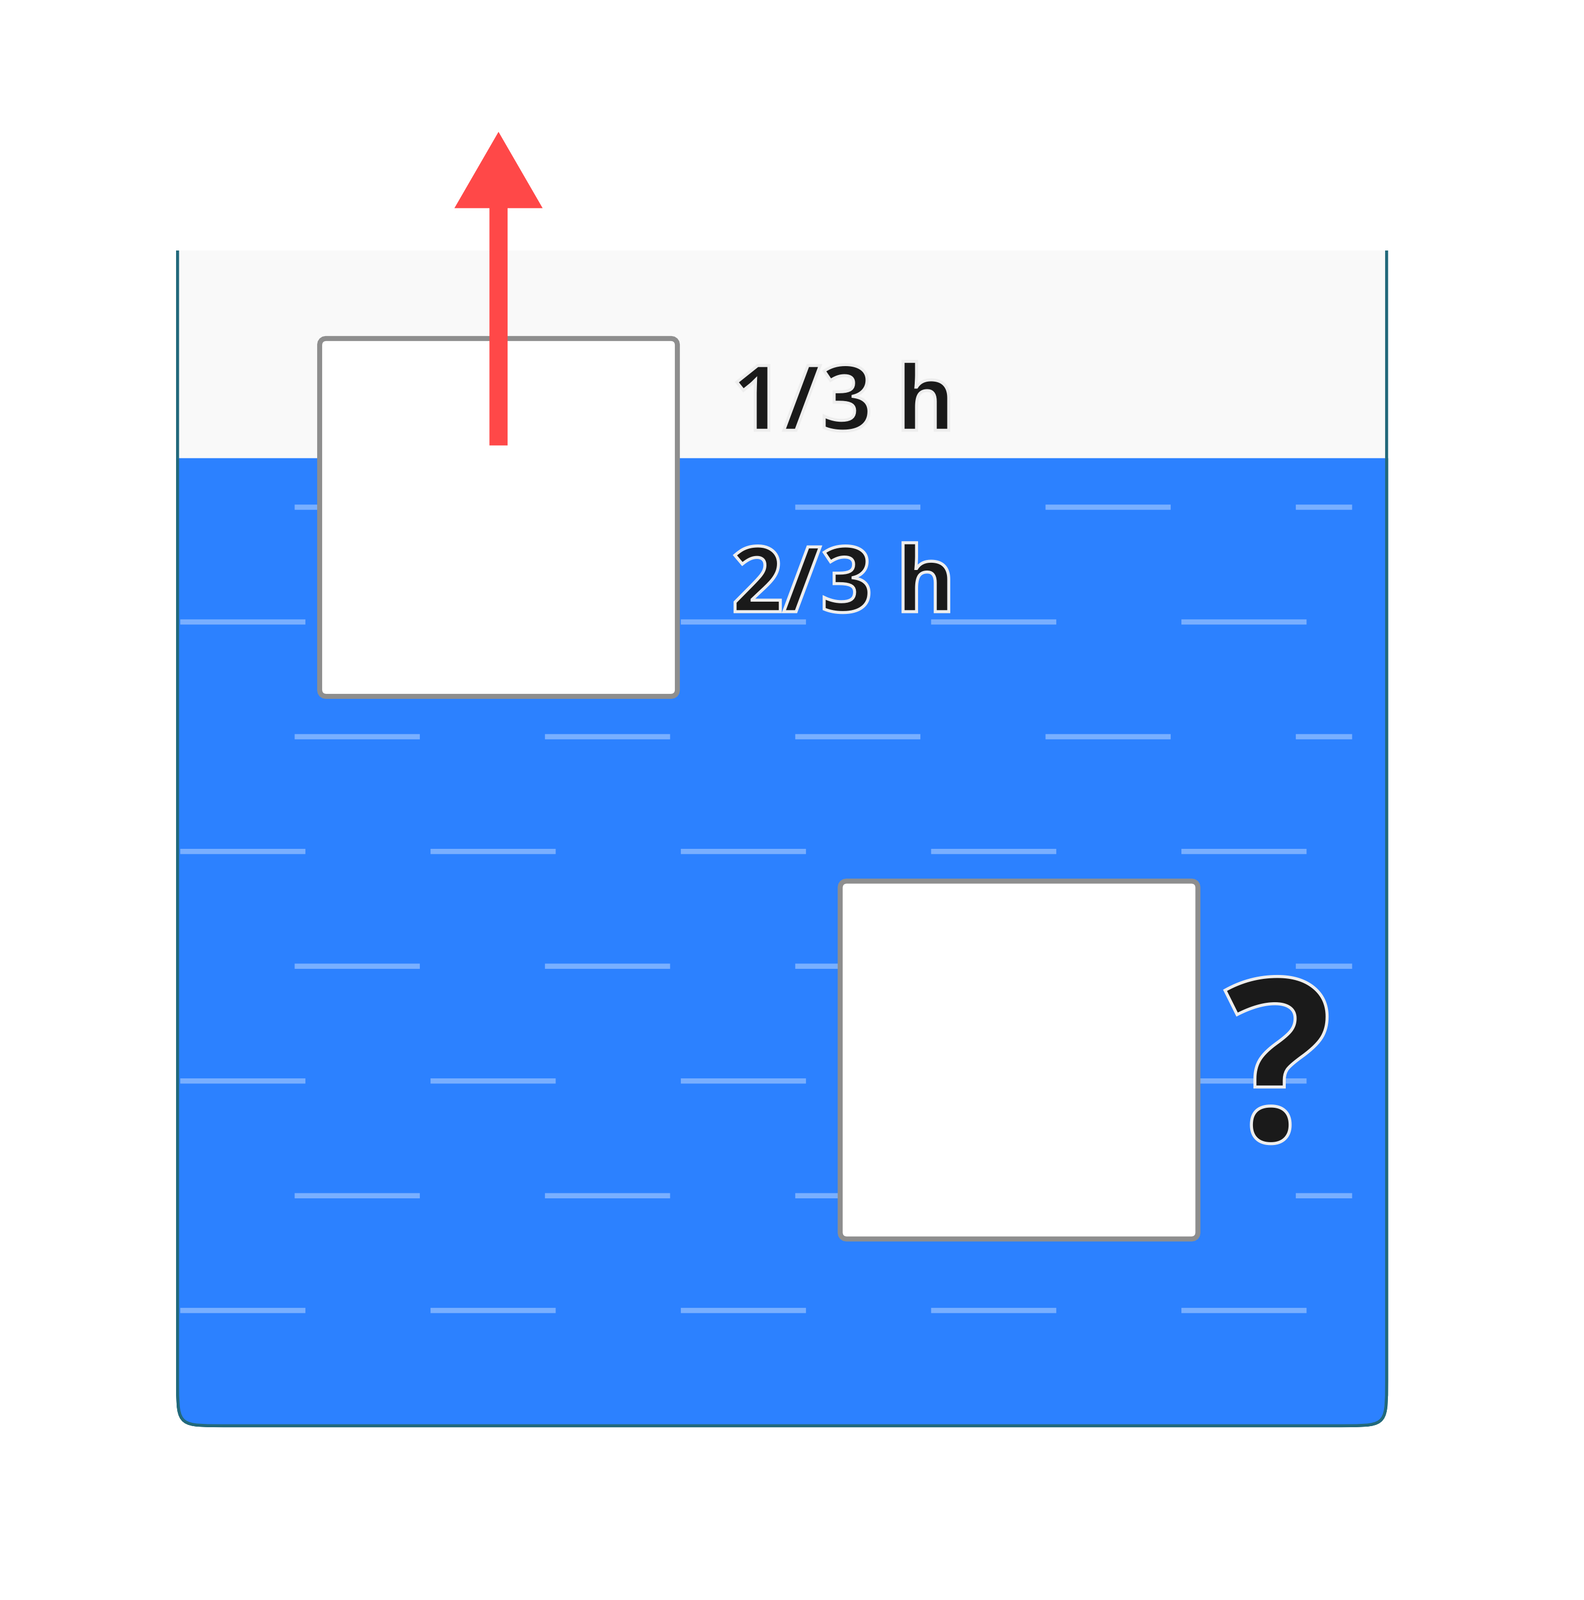 Ilustracja przedstawia naczynie z niebieską cieczą. Tło białe. W naczyniu dwa białe kwadraty. Pierwszy częściowo zanurzony. Po prawej stronie napisy, nad powierzchnią cieczy: „1/3 h”, pod powierzchnią cieczy: „2/3 h”. Od środka kwadratu poprowadzono czerwoną, pionową strzałkę. Zwrot ku górze. Strzałka sięga poza krawędzie kwadratu. Drugi kwadrat całkowicie zanurzony. Znajduje się bliżej dna naczynia niż powierzchni cieczy. Po prawej stronie narysowano czarny znak zapytania.